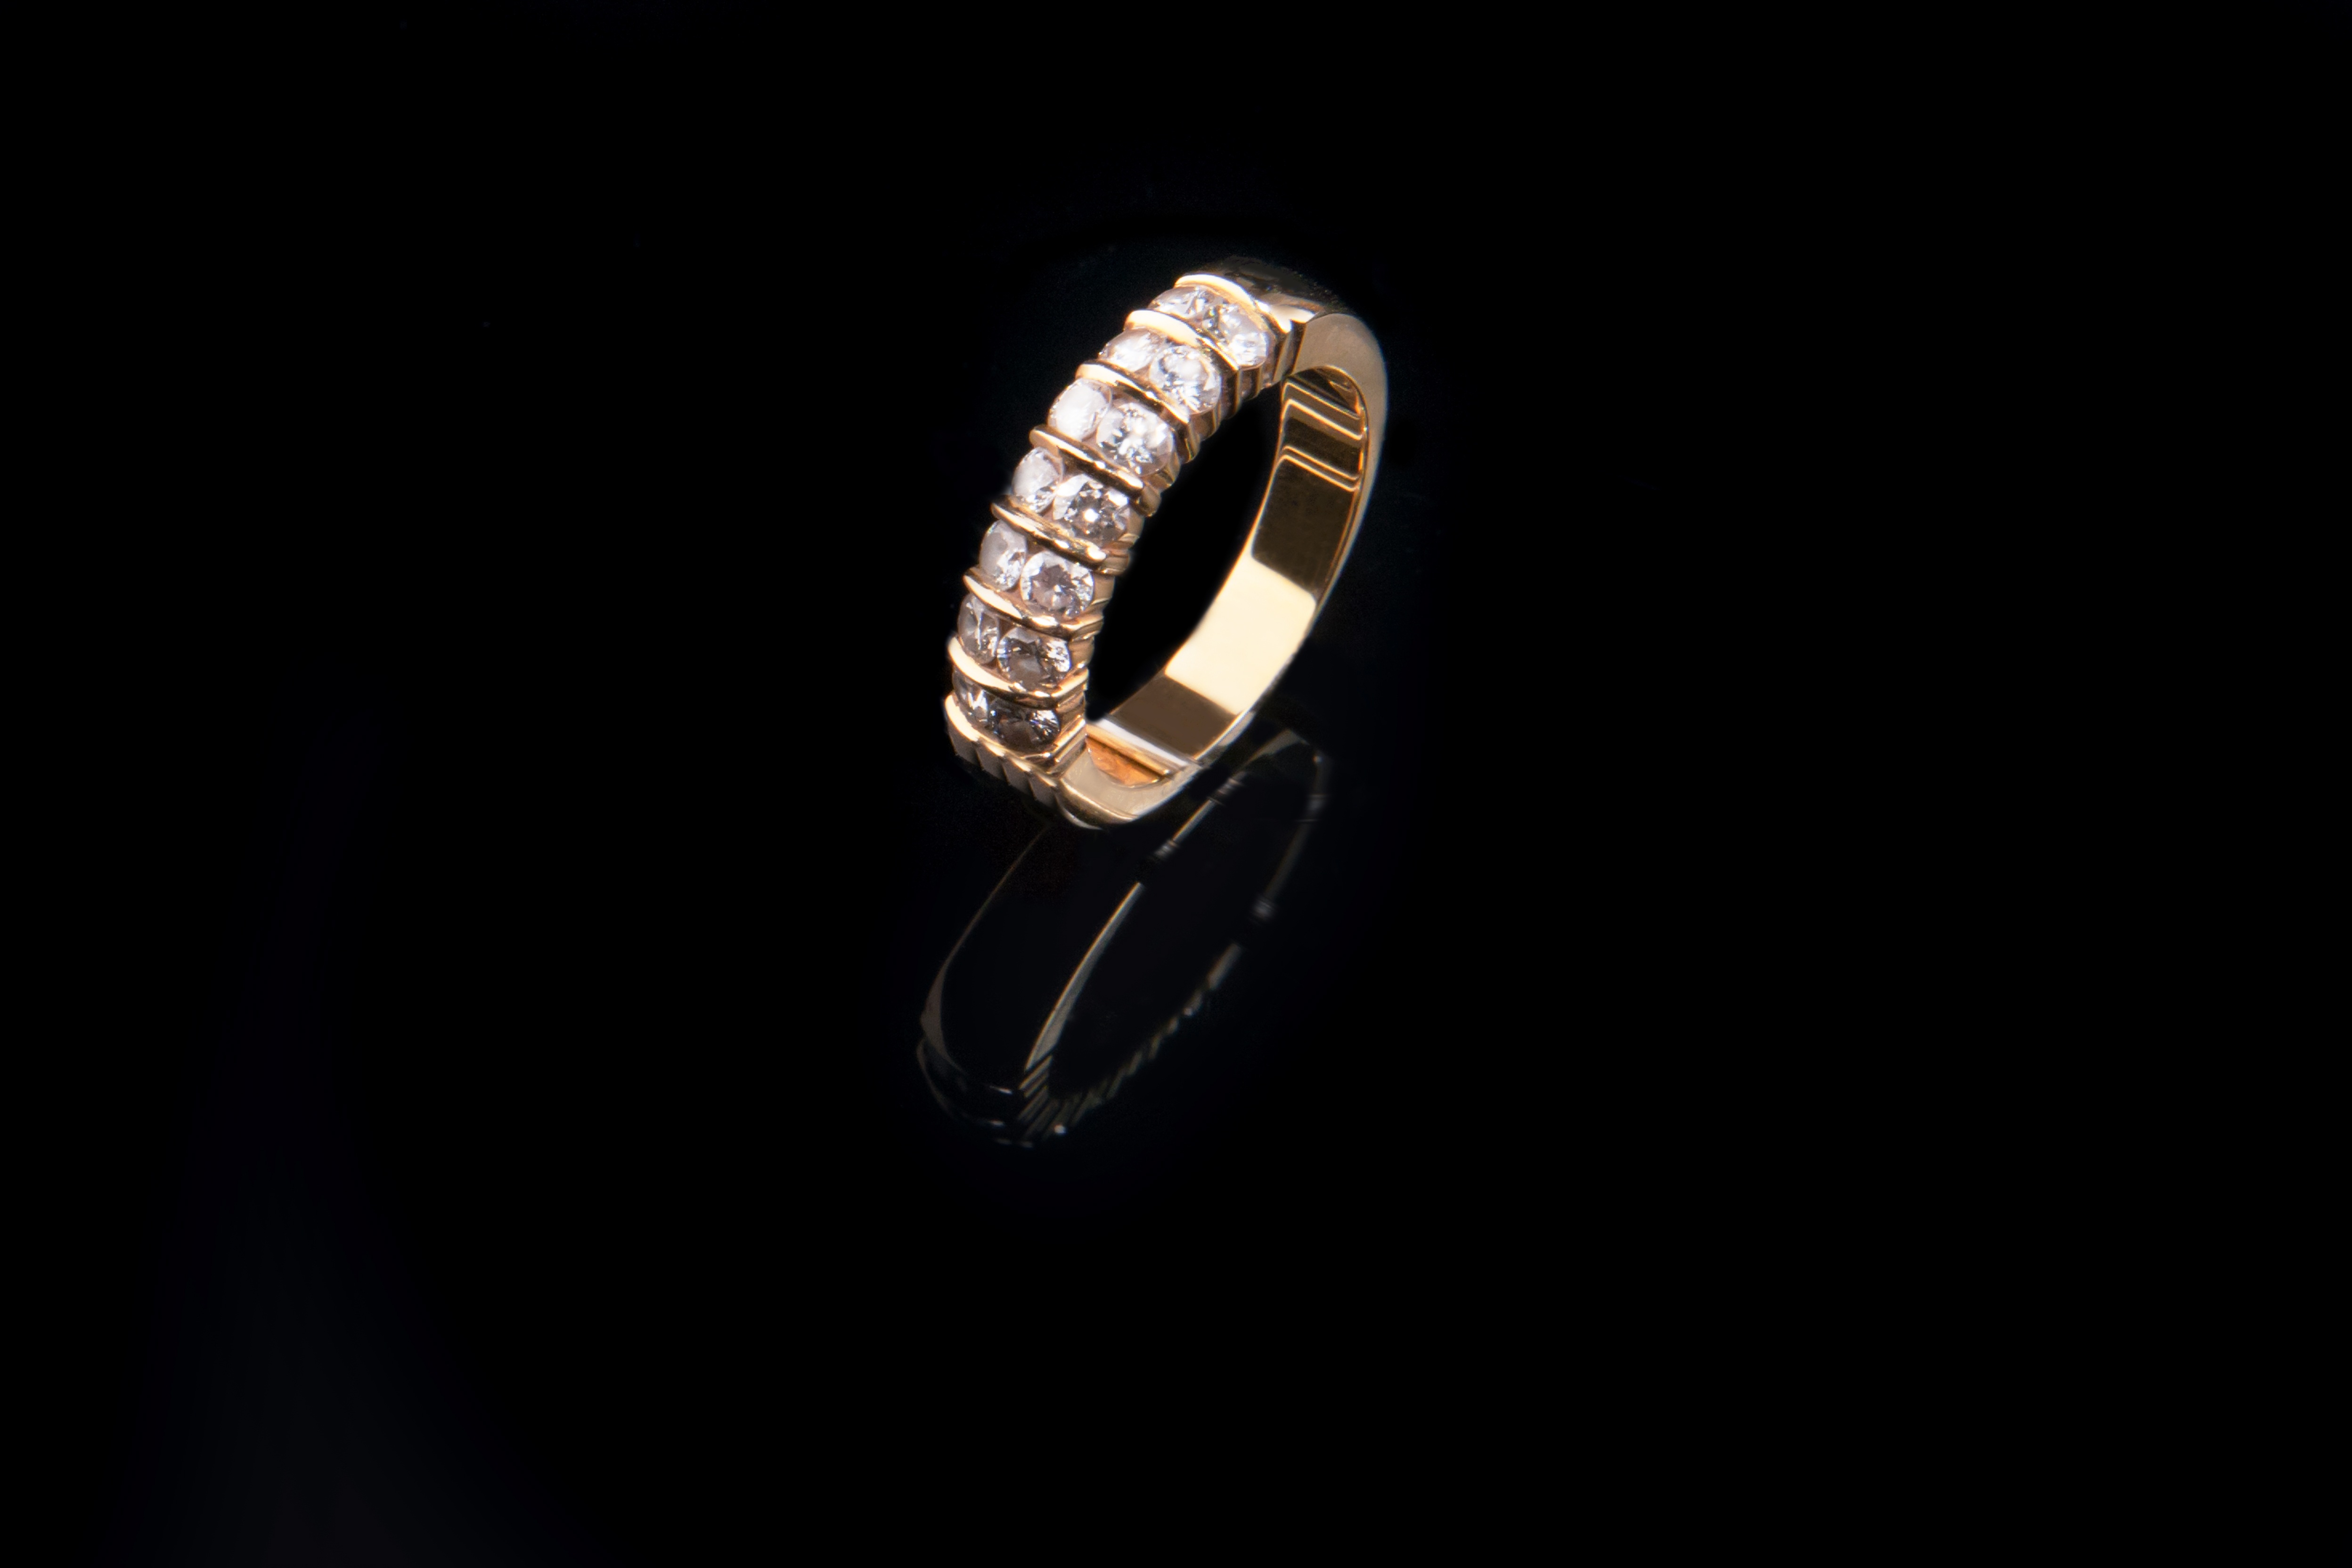 Фото рука, кольцо, любовь, свадебные, брак, участия, новобрачные, обручальное кольцо, ювелирные изделия, золото, алмаз, бриллианты, драгоценный камень, платина, модный аксессуар - бесплатные картинки на Fonwall